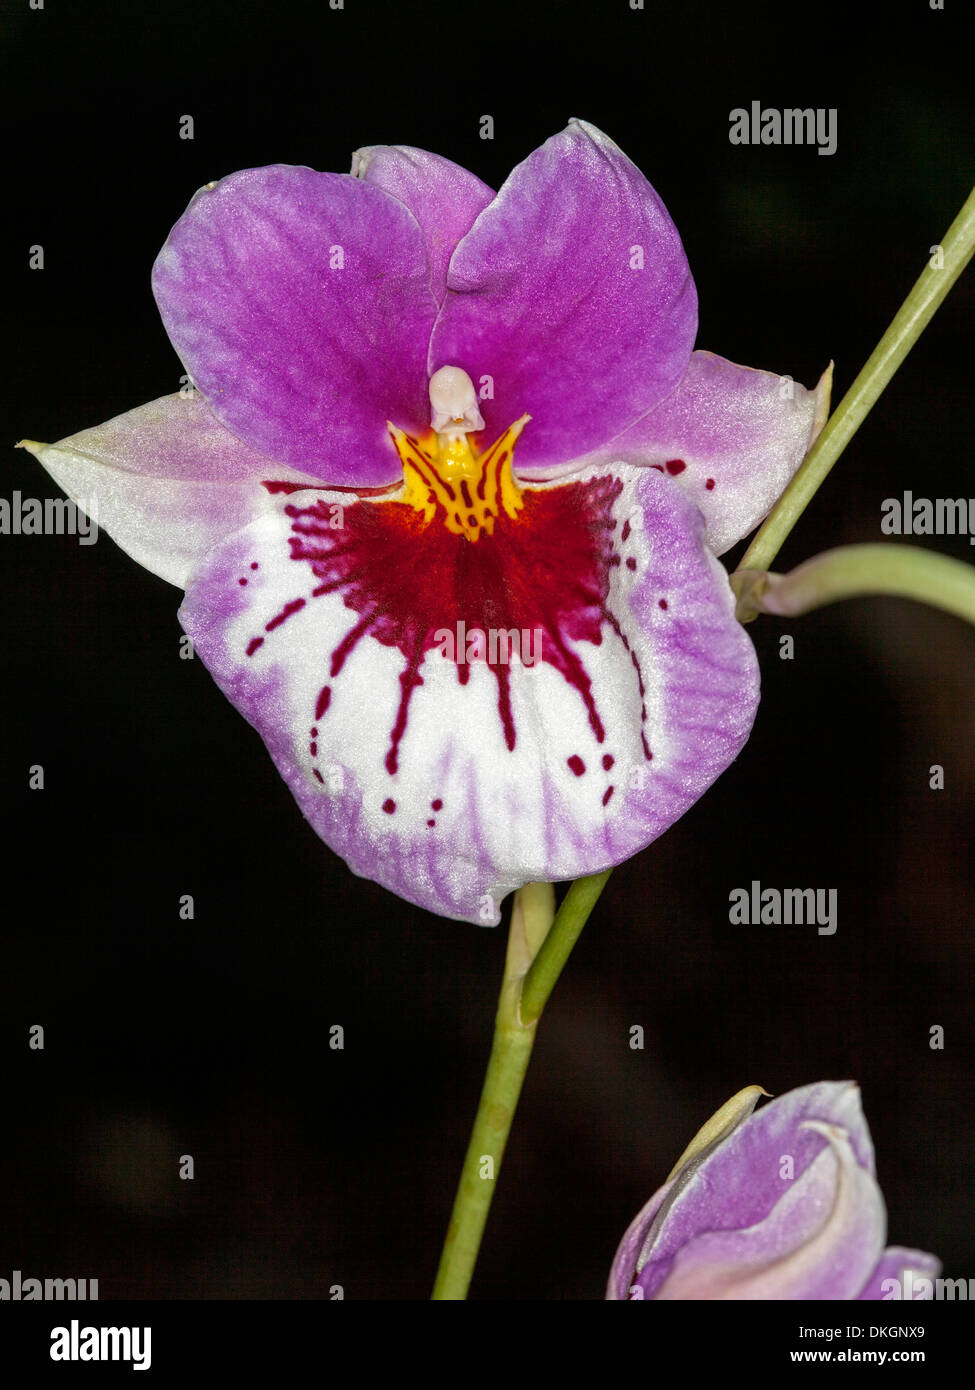 Spektakuläre lila und weißen Blume Stiefmütterchen Orchidee Miltoniopsis "In The Pink" "Üppige" vor einem dunklen Hintergrund Stockfoto